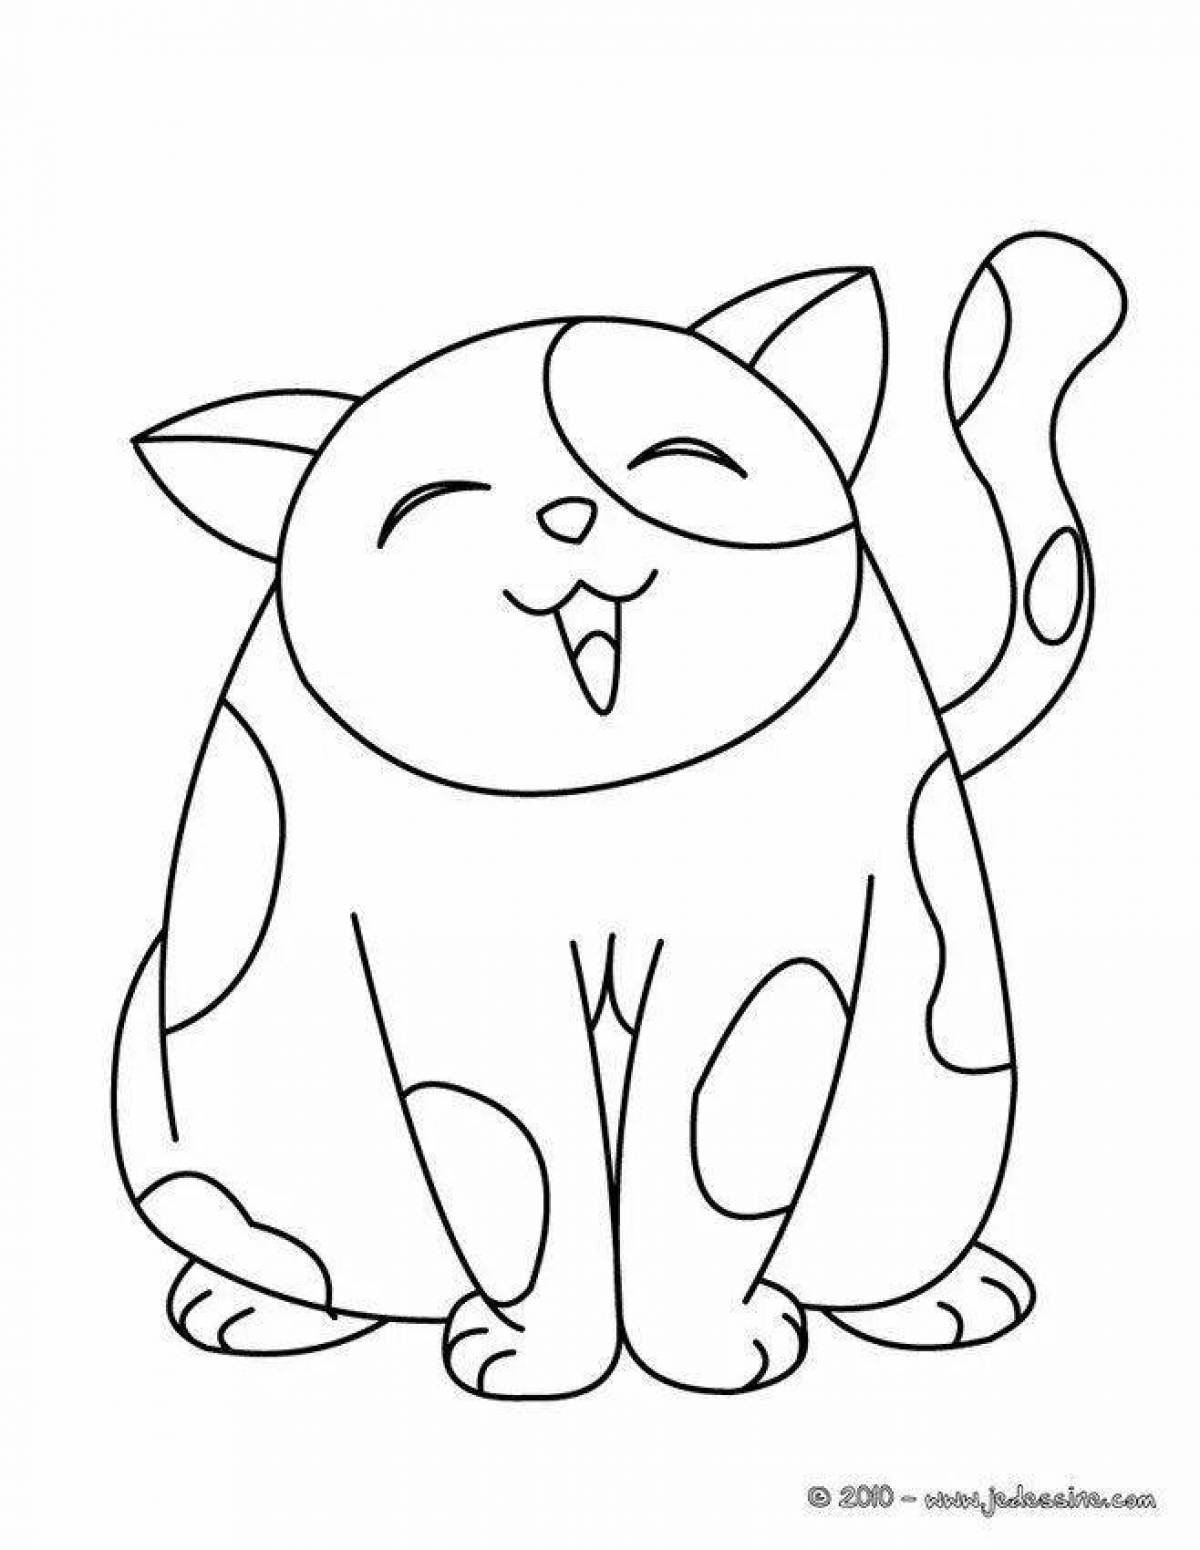 Раскраски Толстый котик (36 шт.) - скачать или распечатать бесплатно #